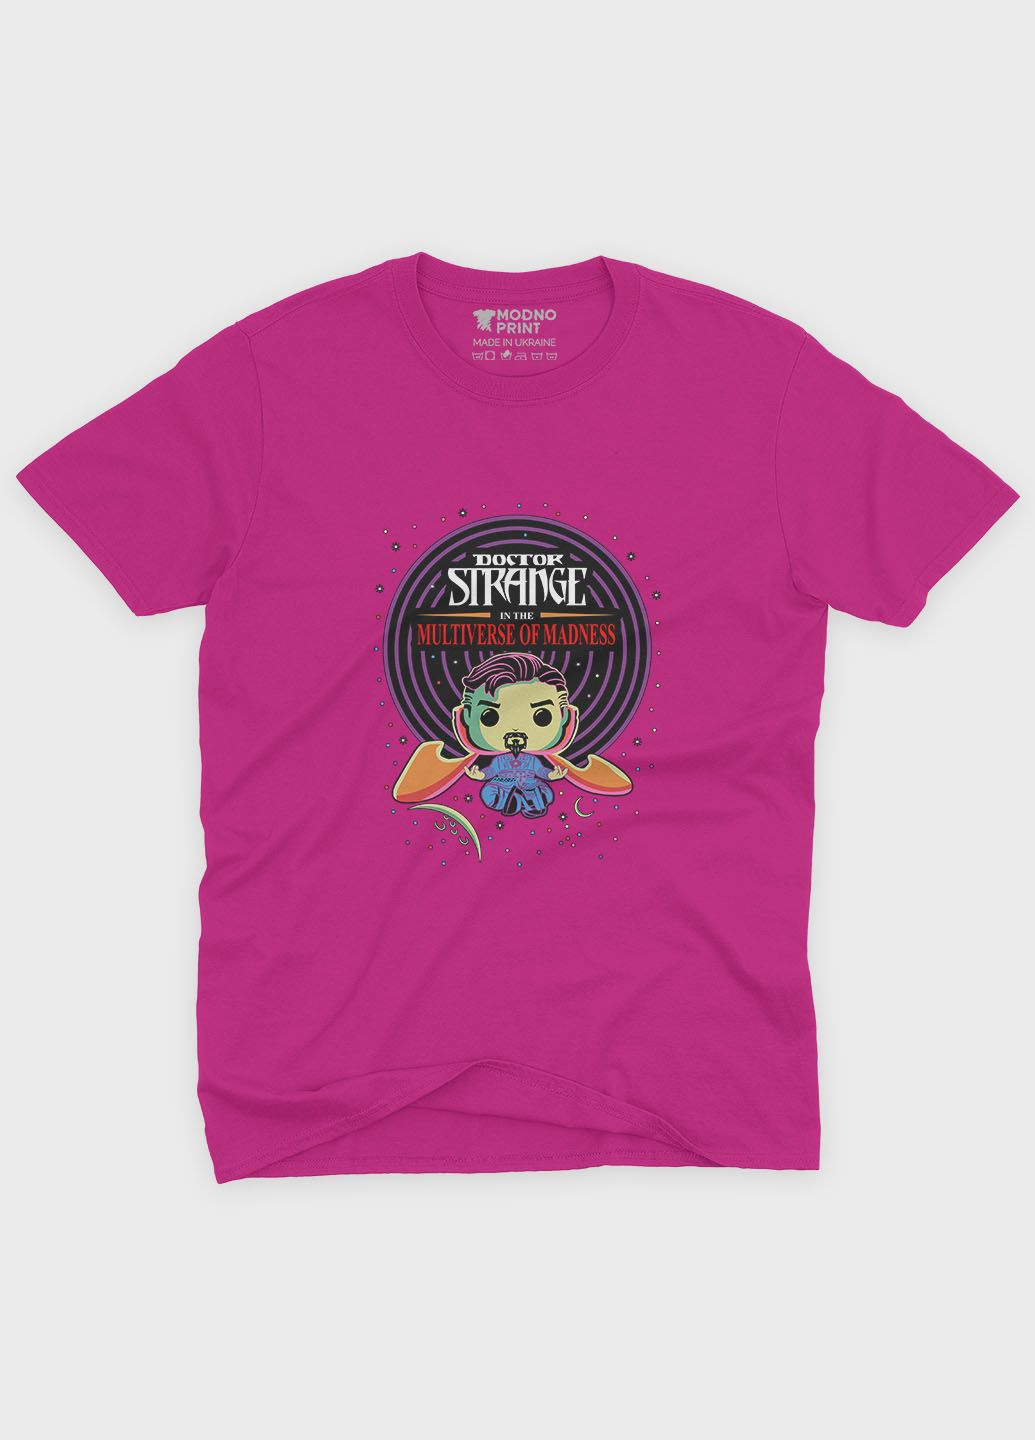 Розовая демисезонная футболка для мальчика с принтом супергероя - доктор стрэндж (ts001-1-fuxj-006-020-007-b) Modno